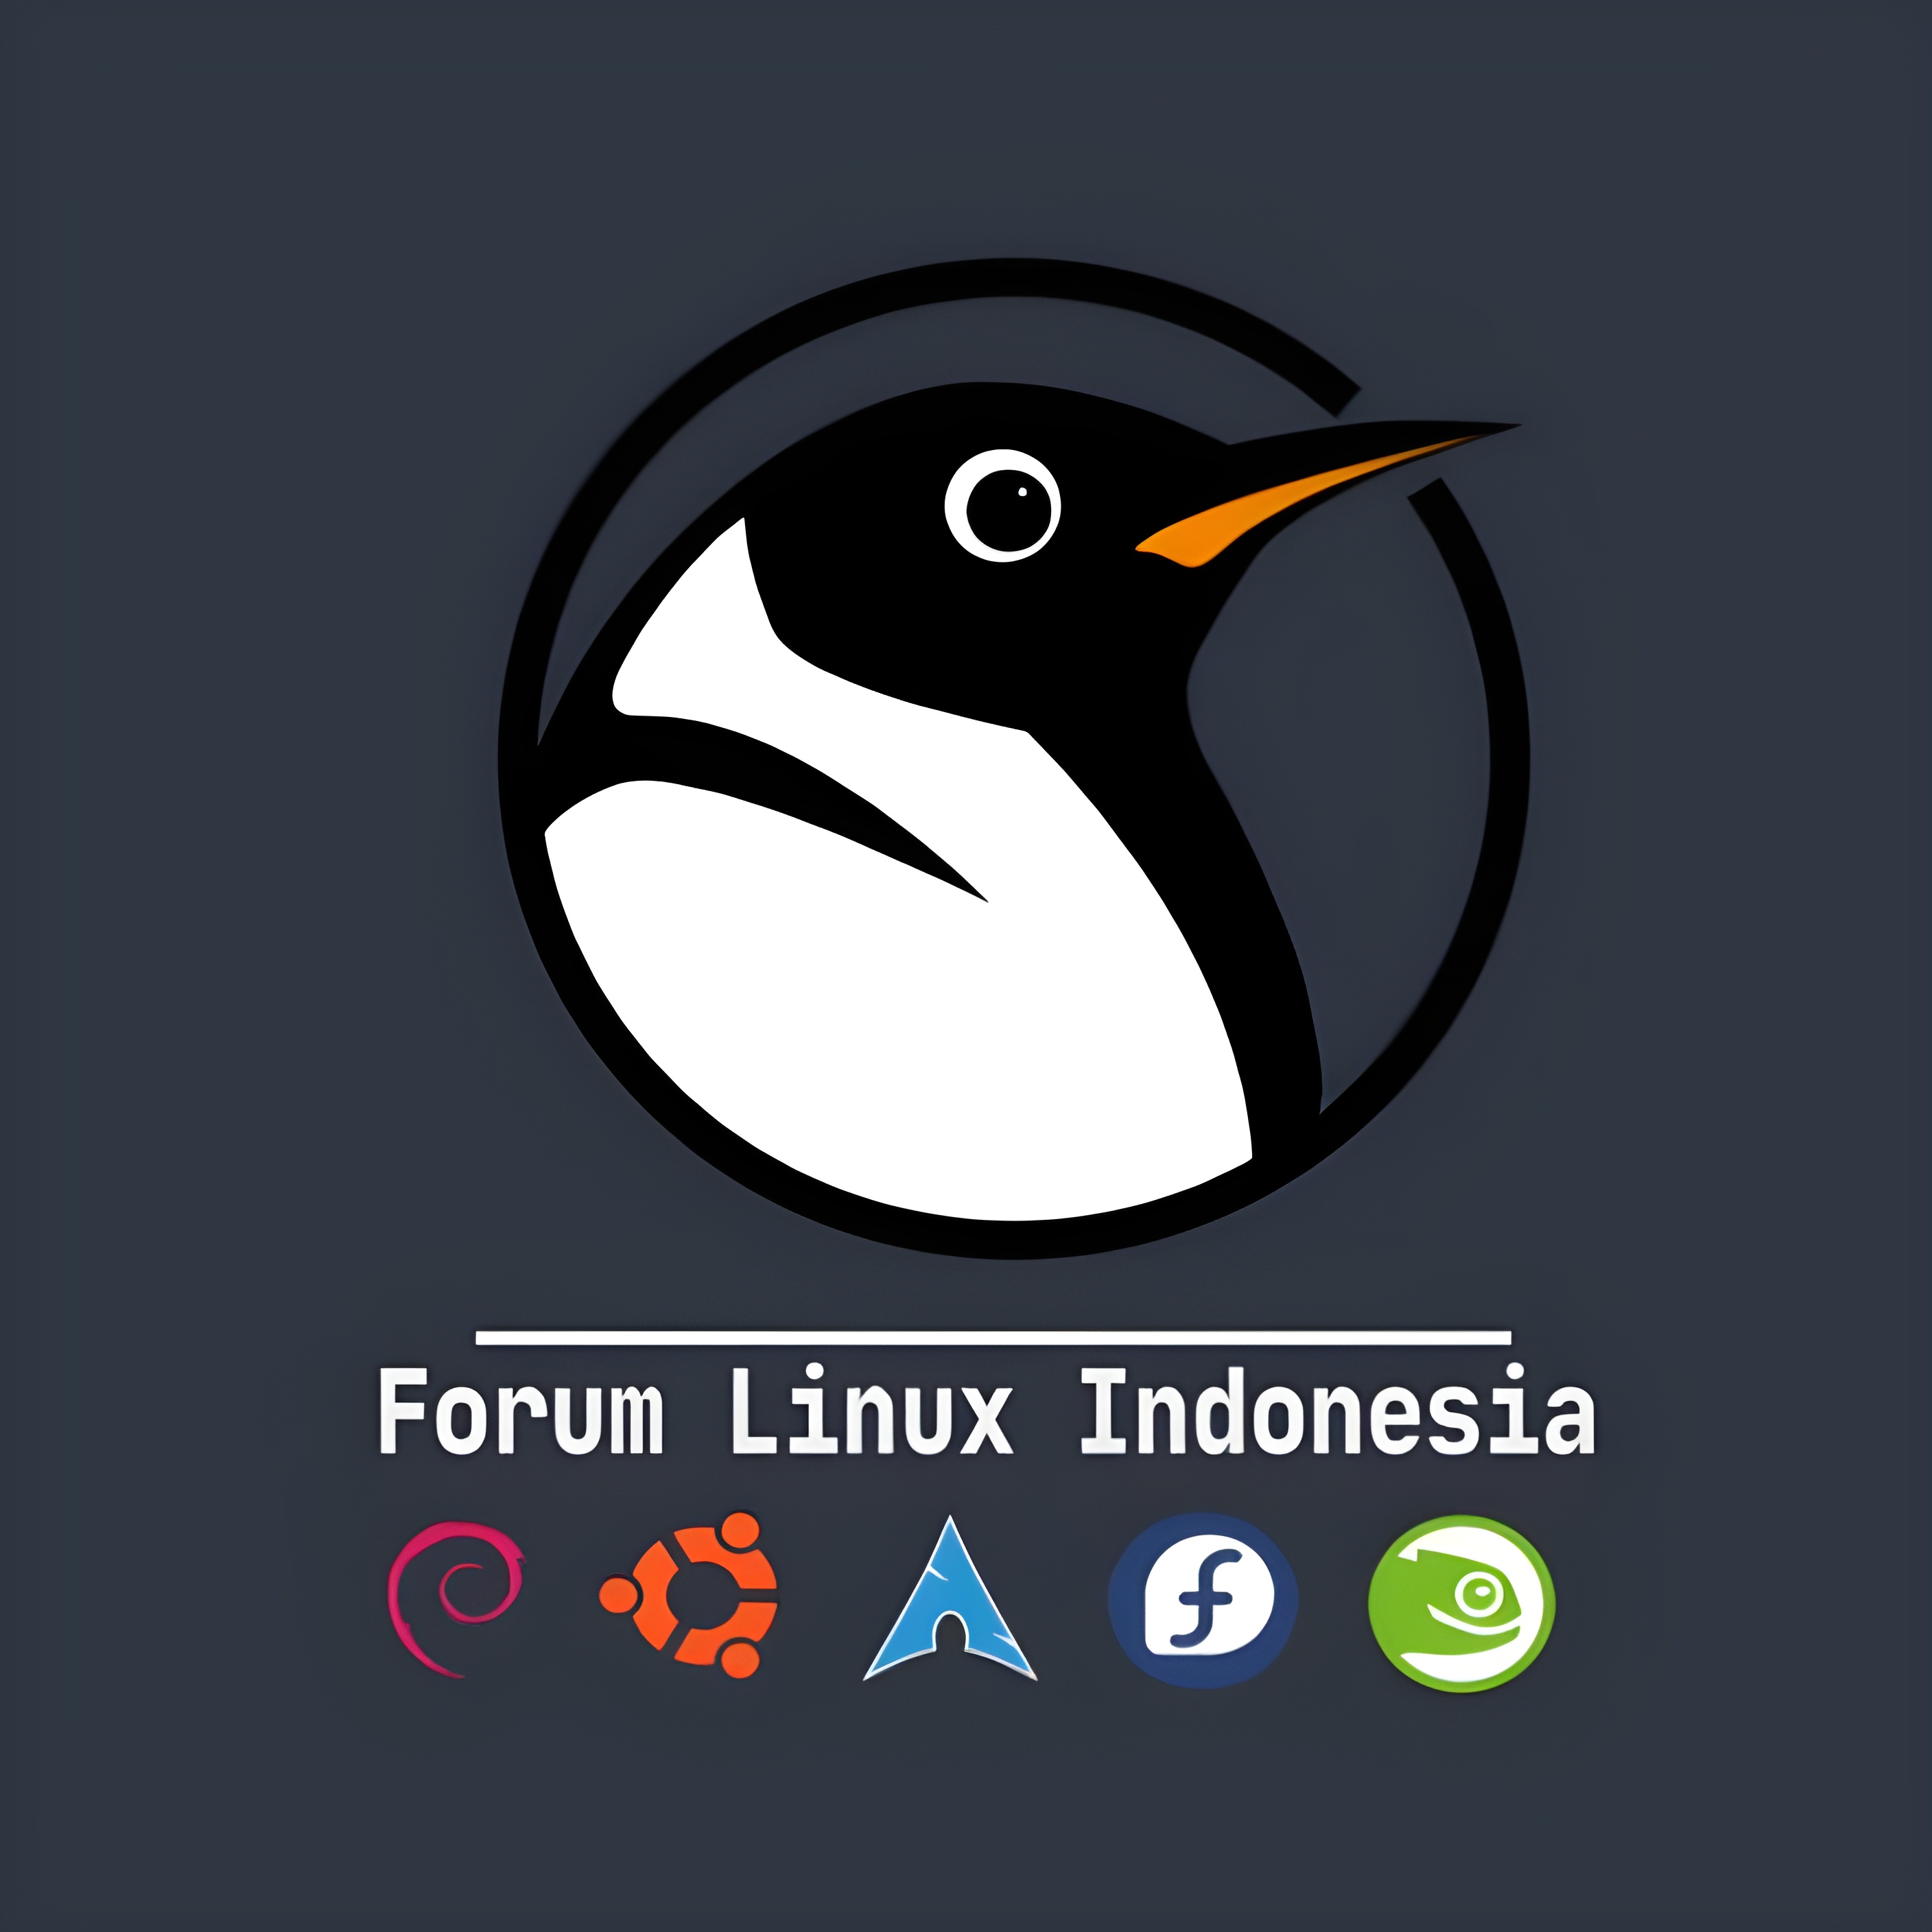 Forum Linux Indonesia